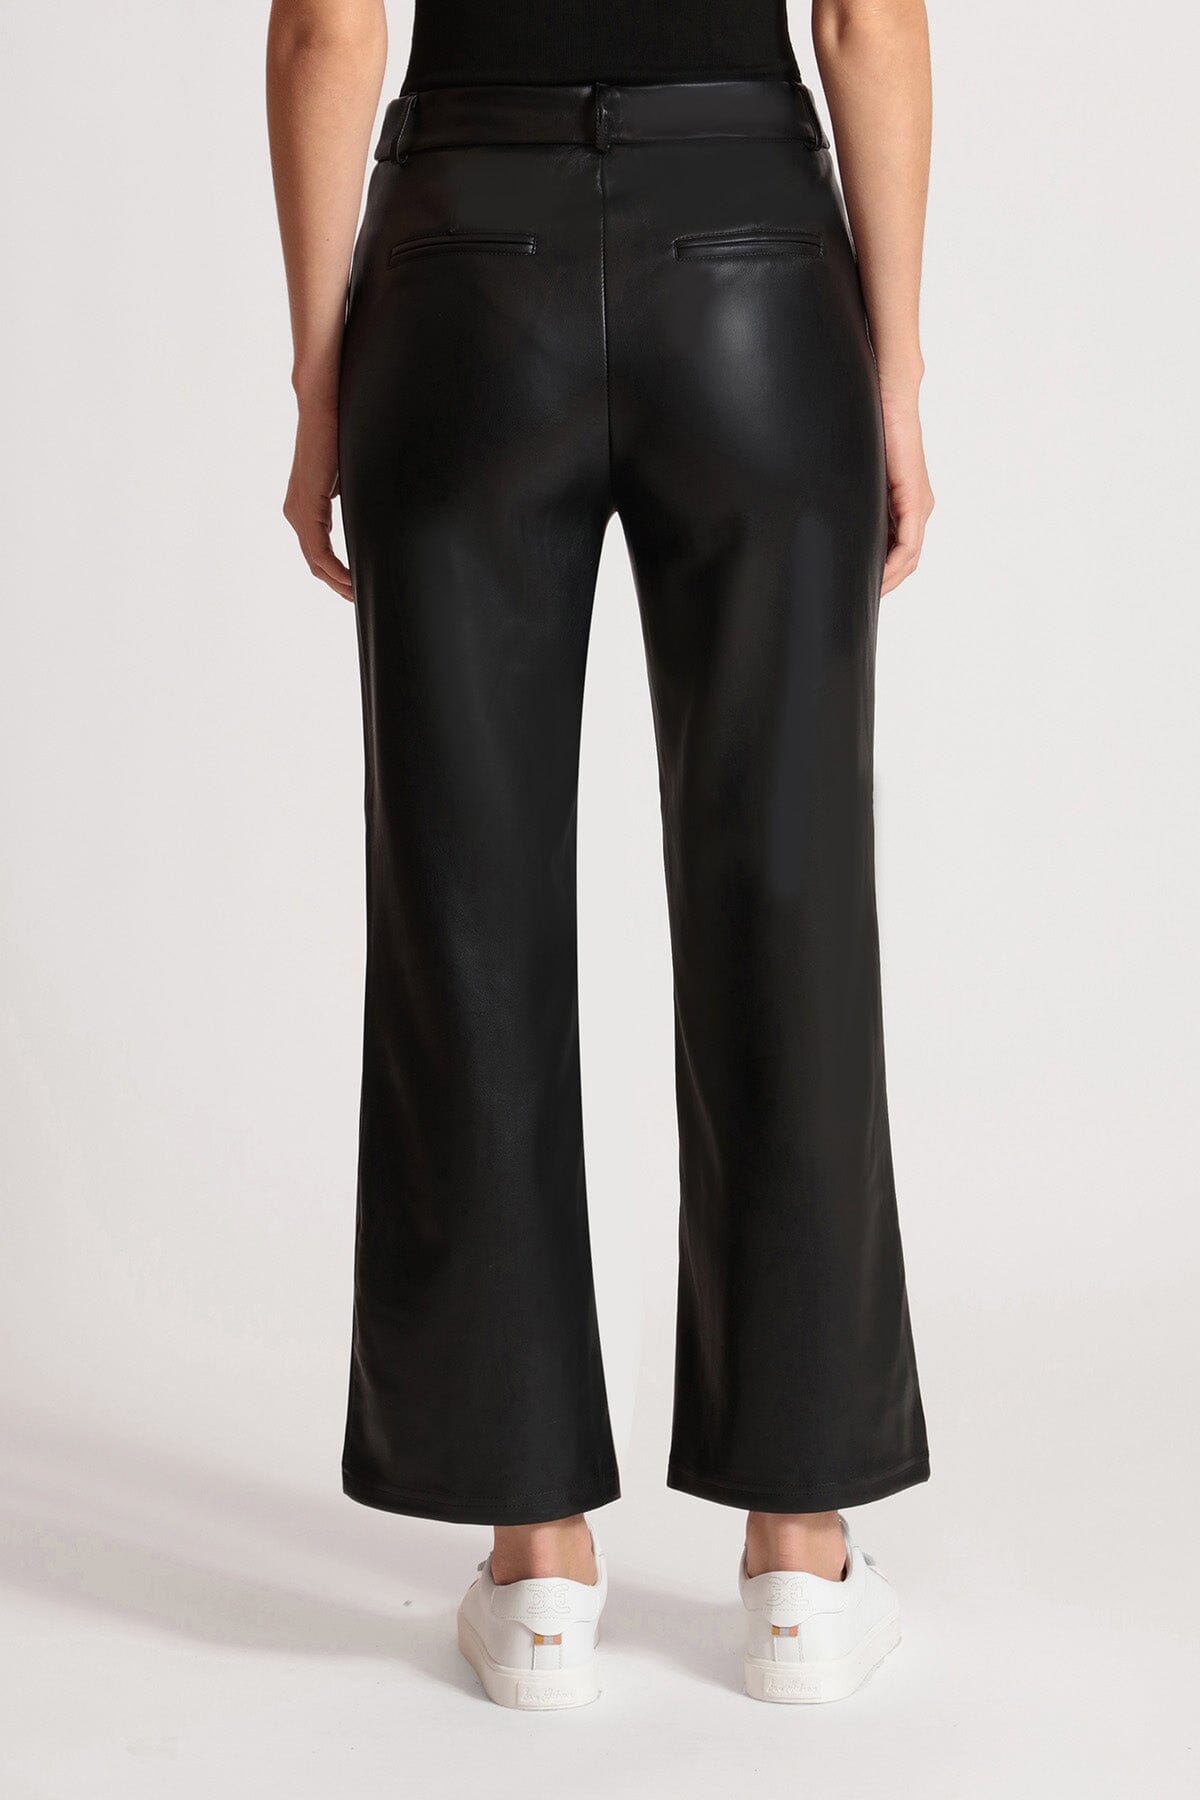 women's black faux vegan leather wide leg cropped trouser pants Avec Les Filles 